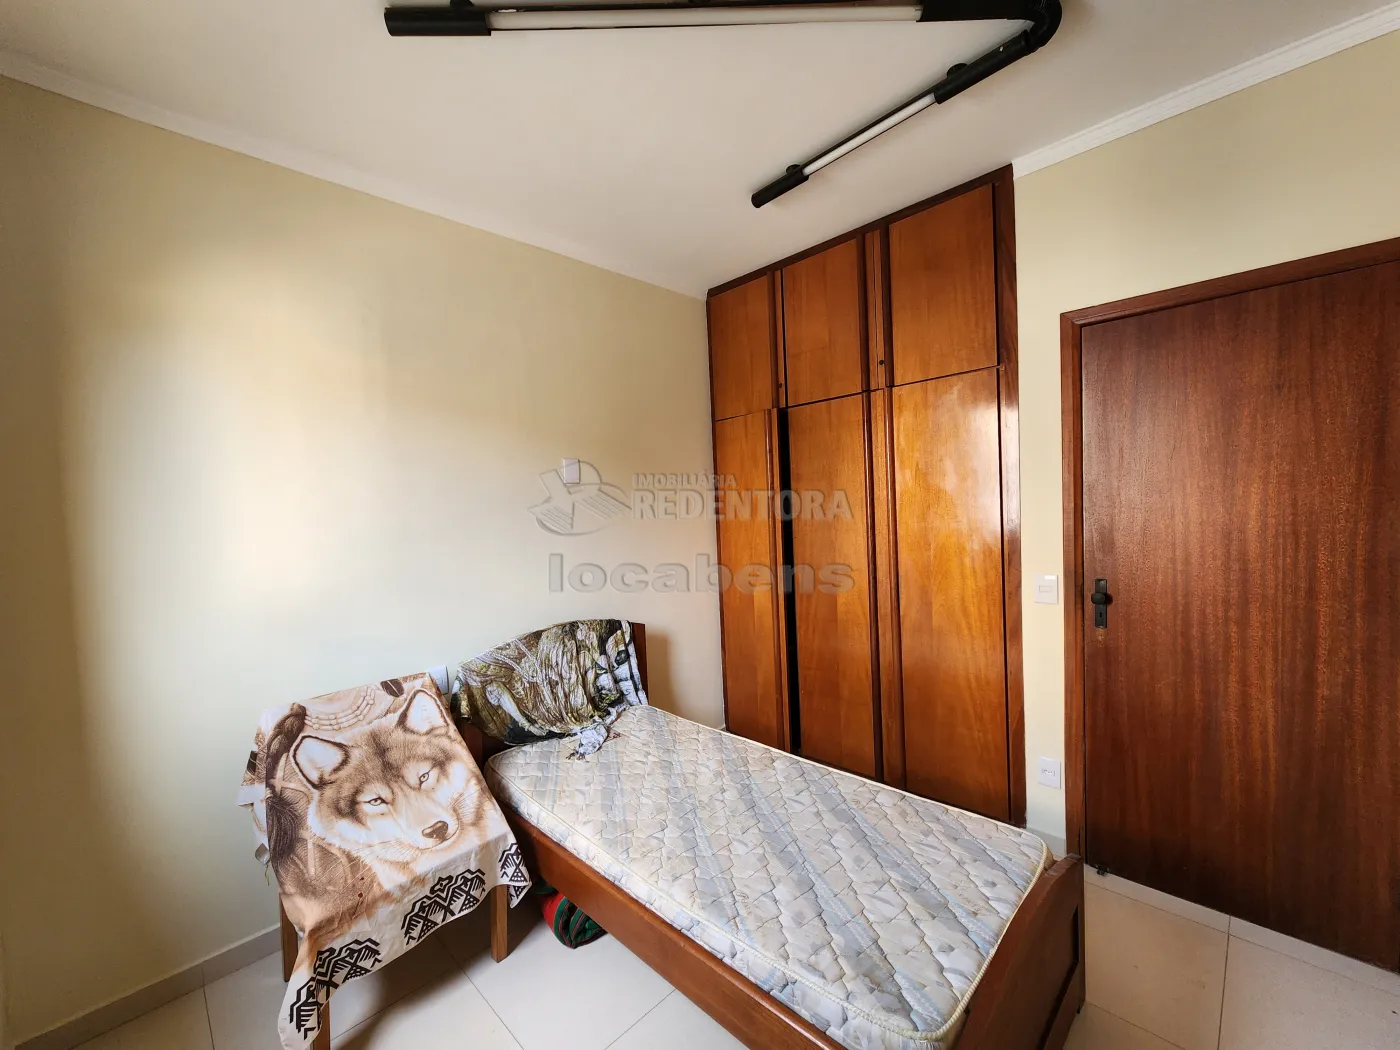 Comprar Apartamento / Padrão em São José do Rio Preto R$ 450.000,00 - Foto 9